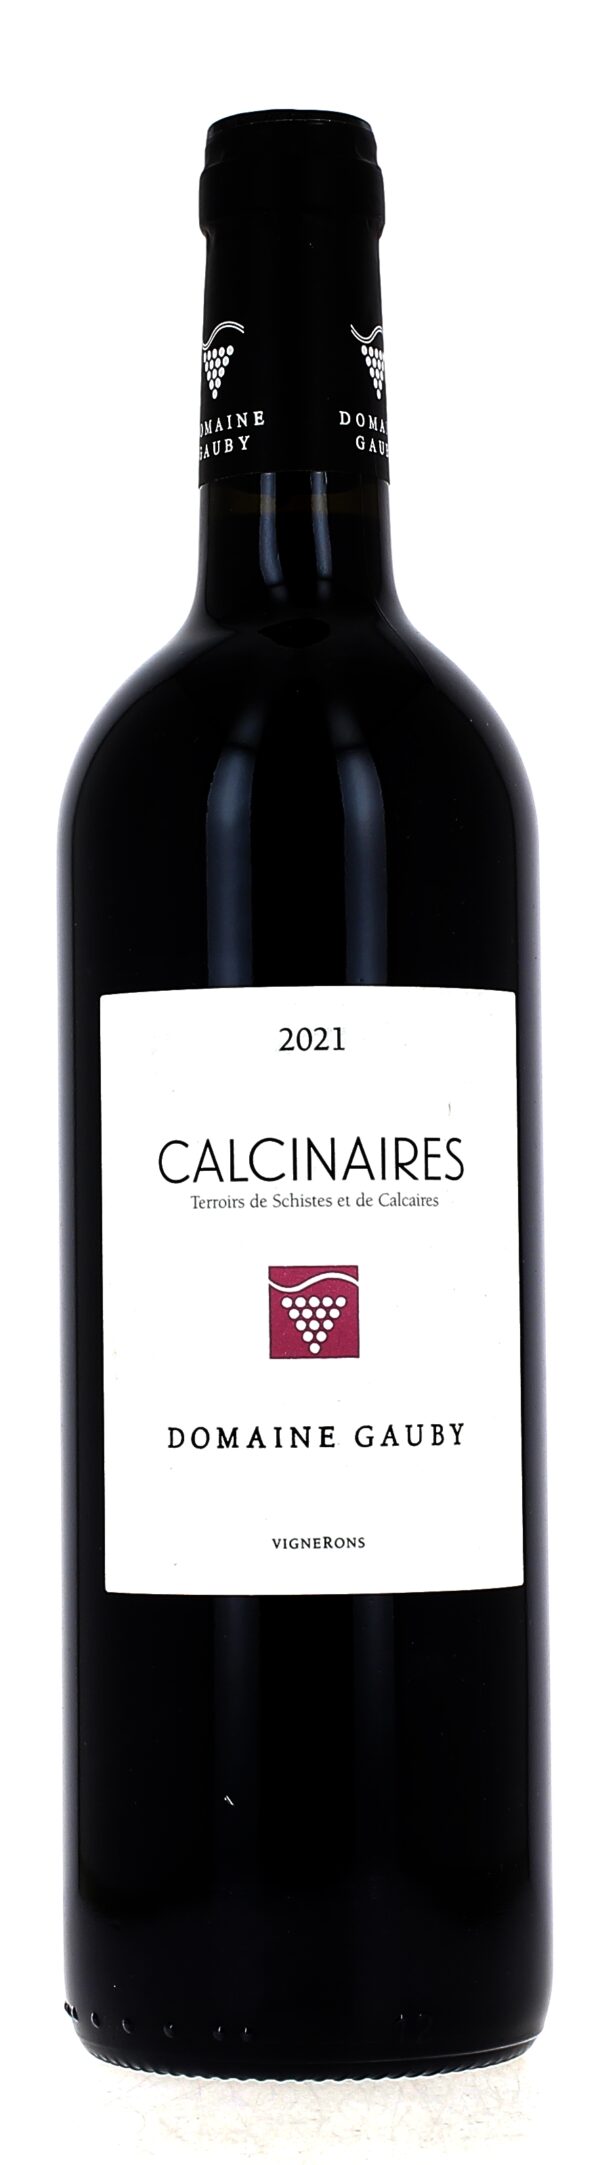 Domaine Gauby Calcinaires rouge 2021 de la région Roussillon aux arômes de fruits noirs et d'épices douces. Assemblages de 4 cépages syrah, mourvèdre, grenache, carignan